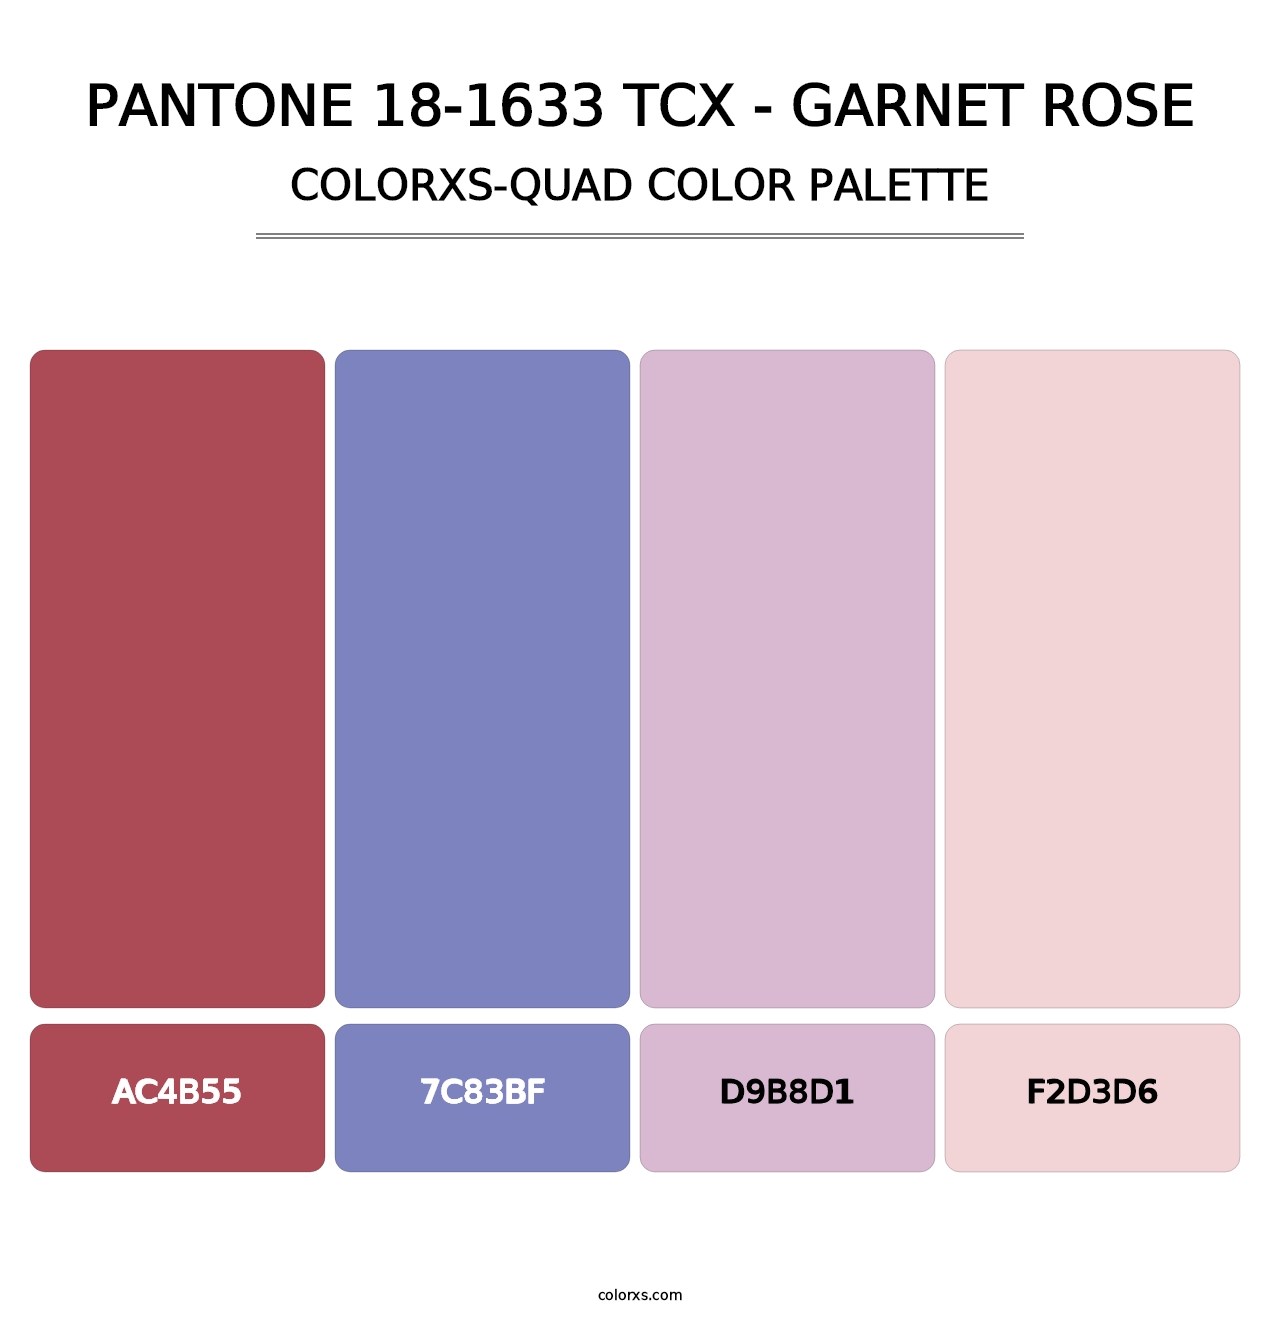 PANTONE 18-1633 TCX - Garnet Rose - Colorxs Quad Palette